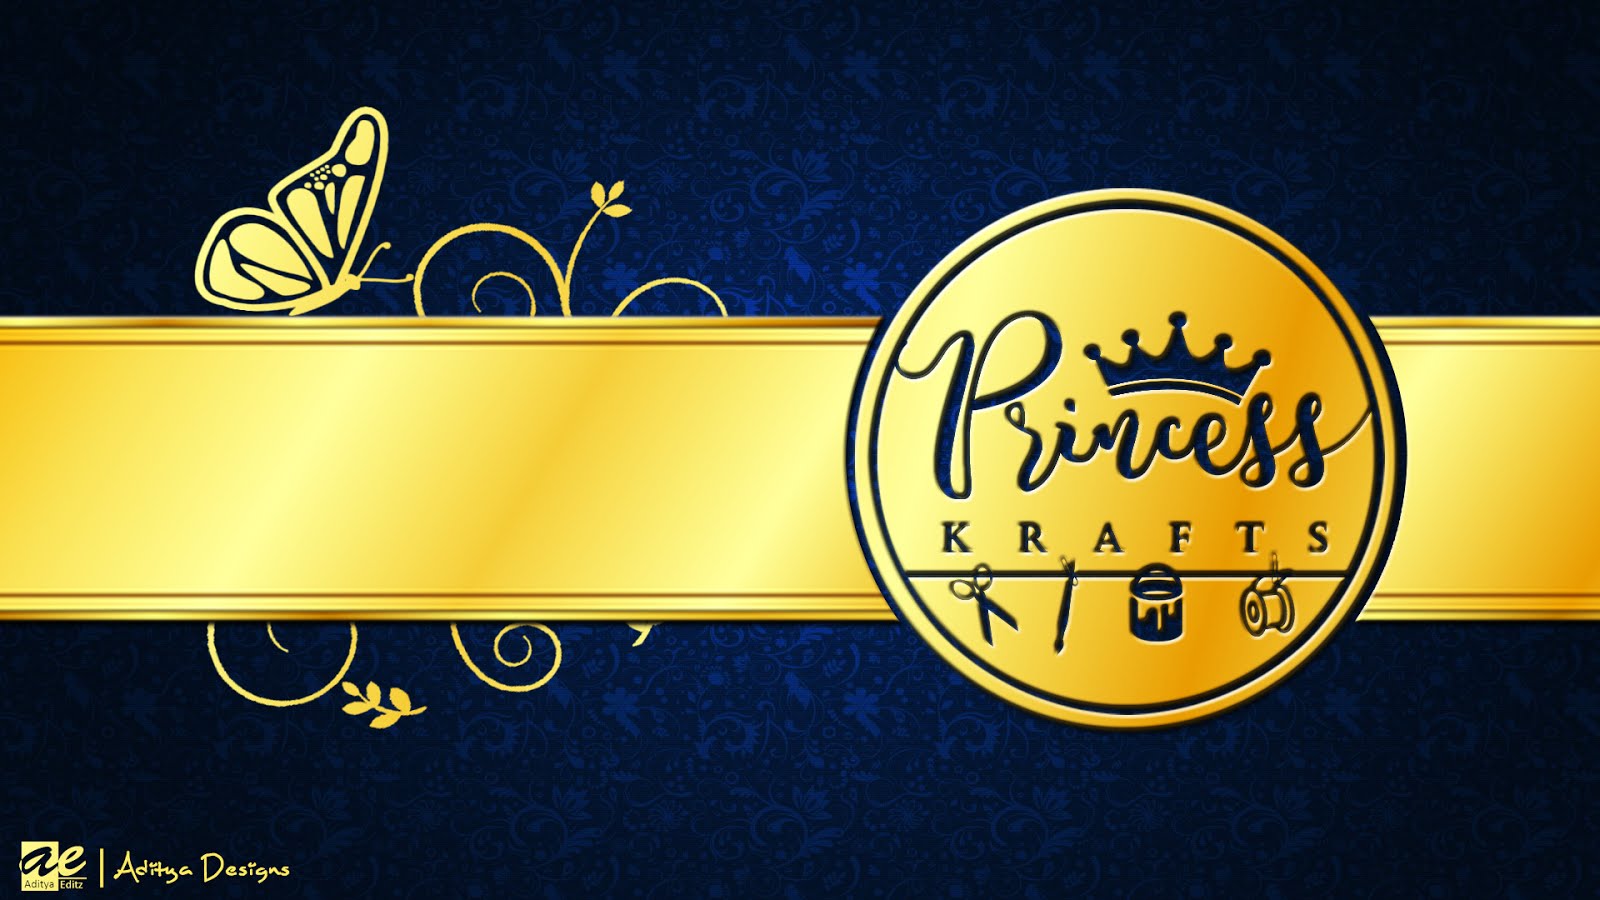 Princess Krafts